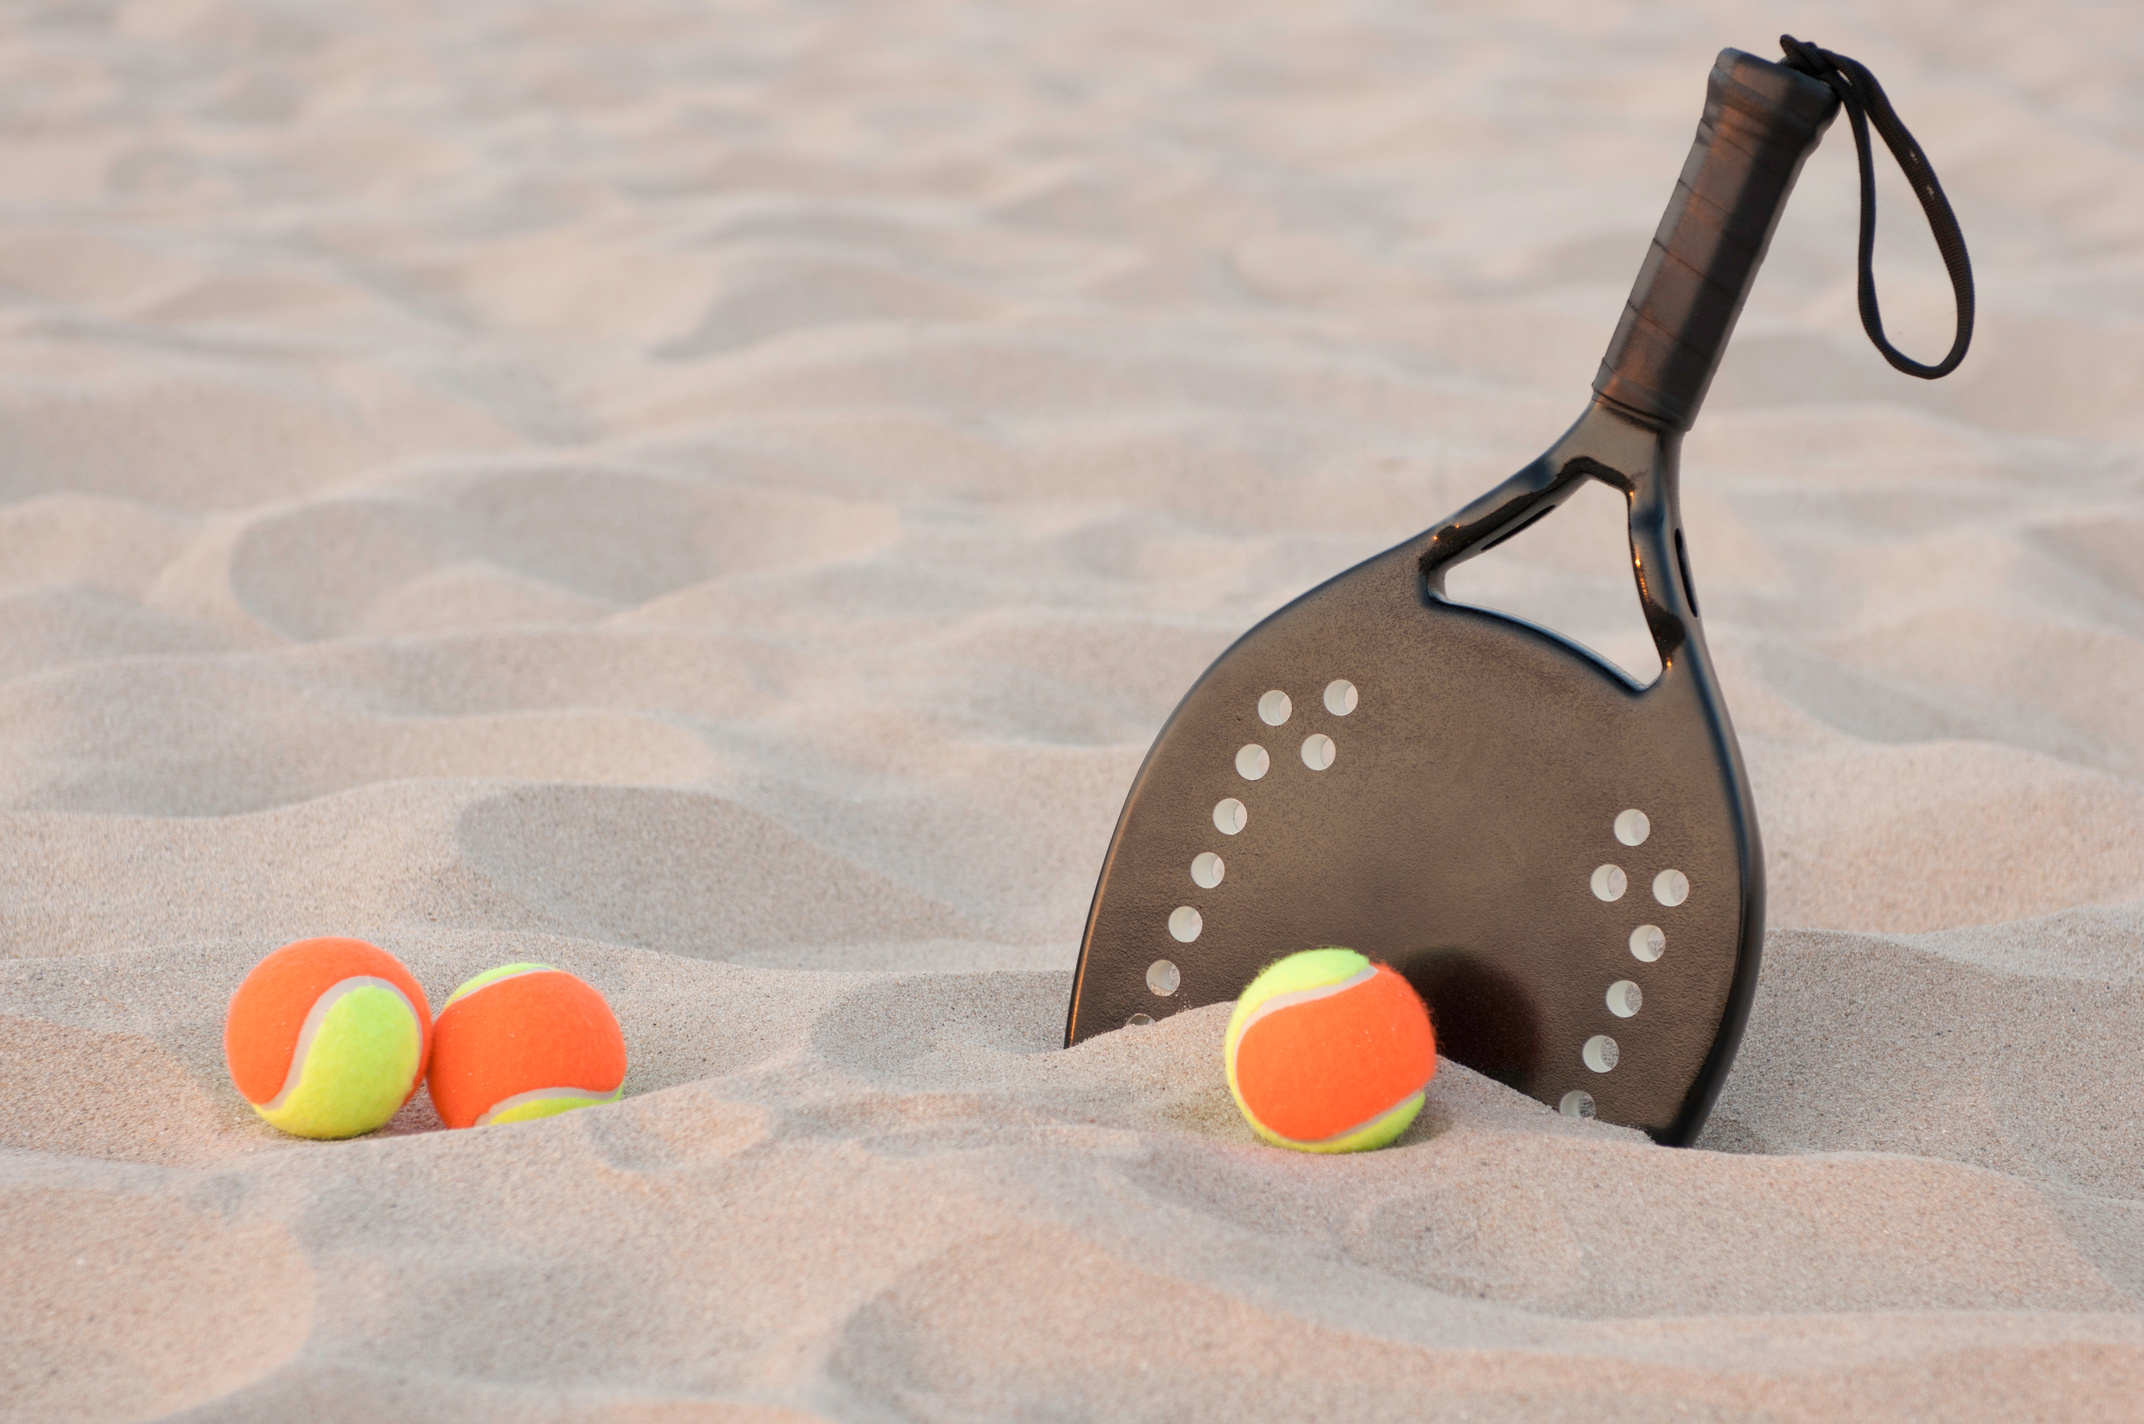 Three beach tennis balls and a racket